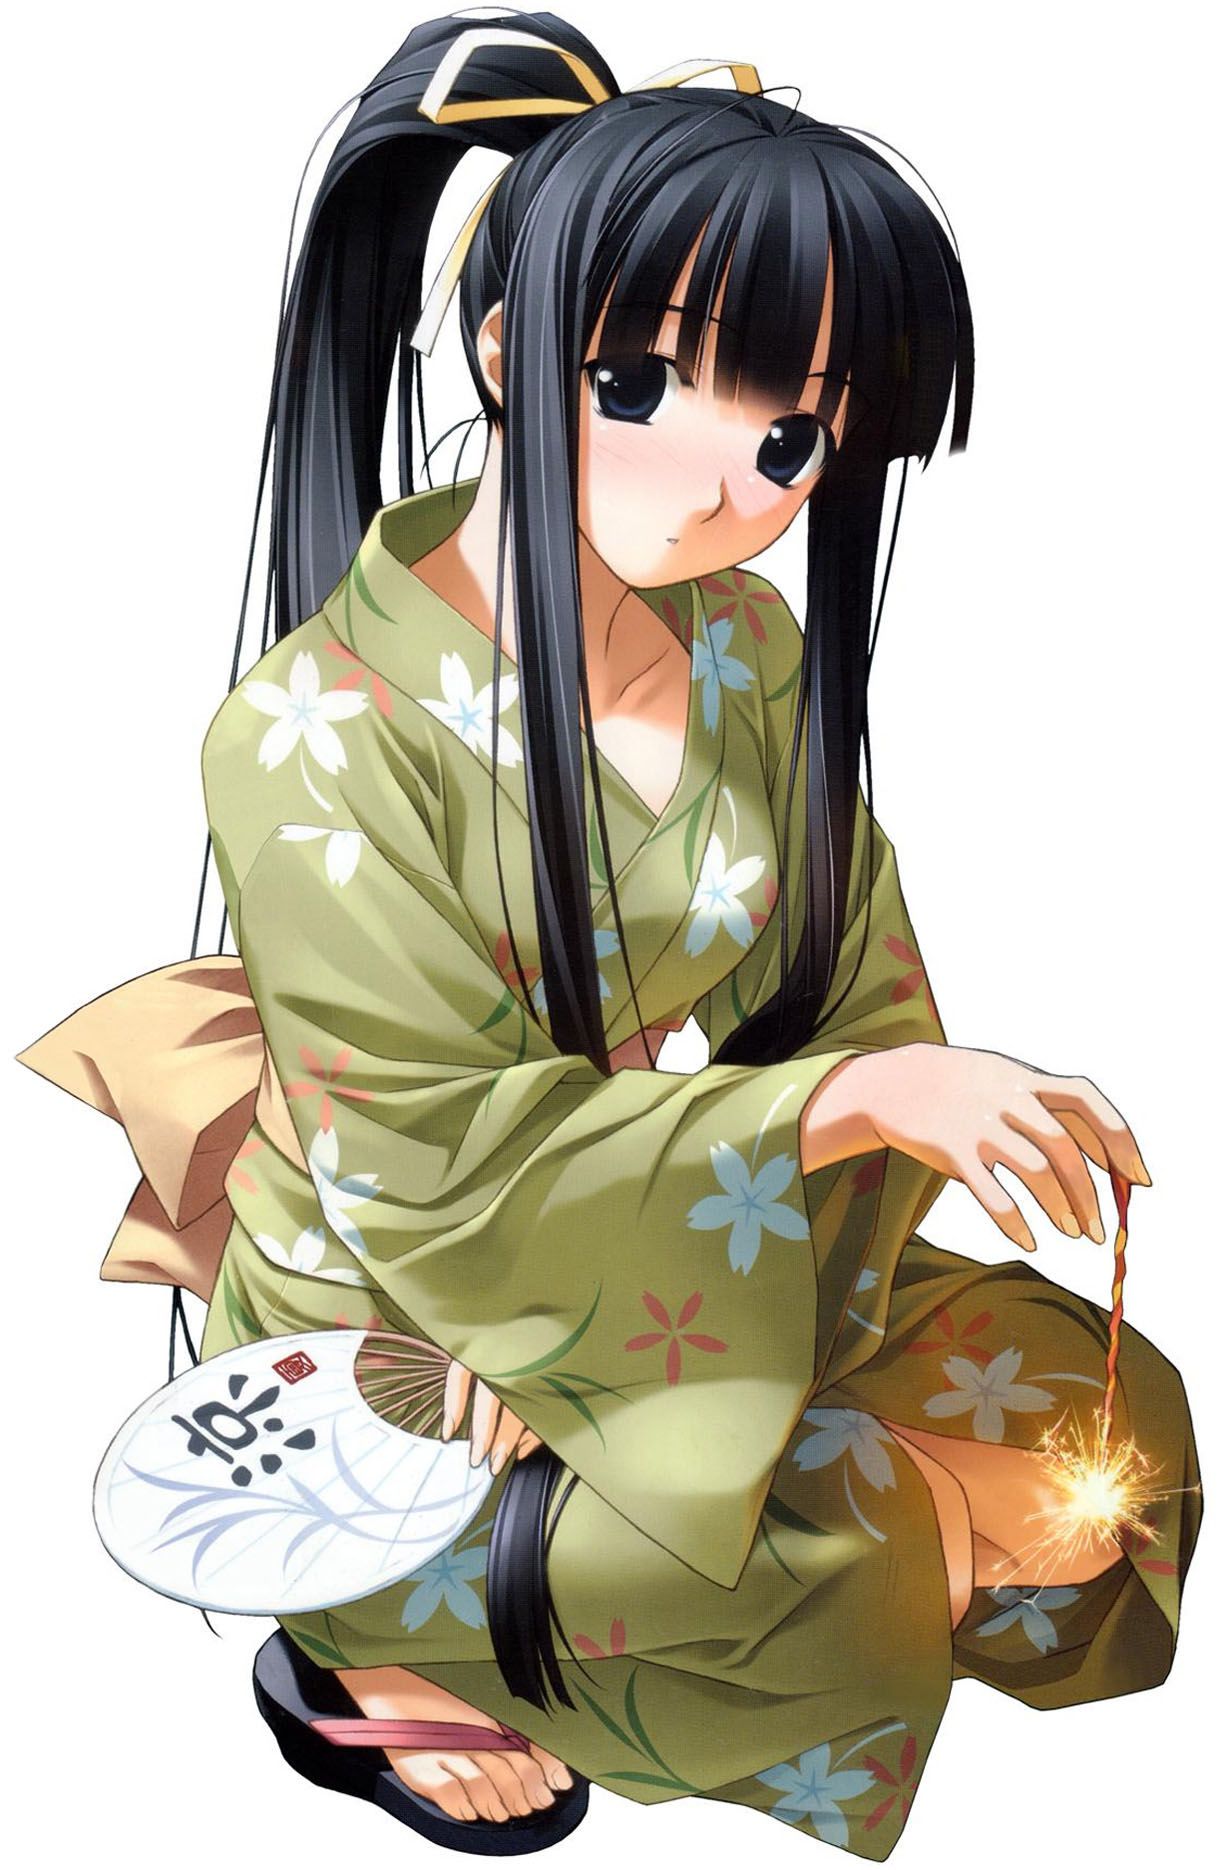 Cute kimono! Erotic image, please w 24 14